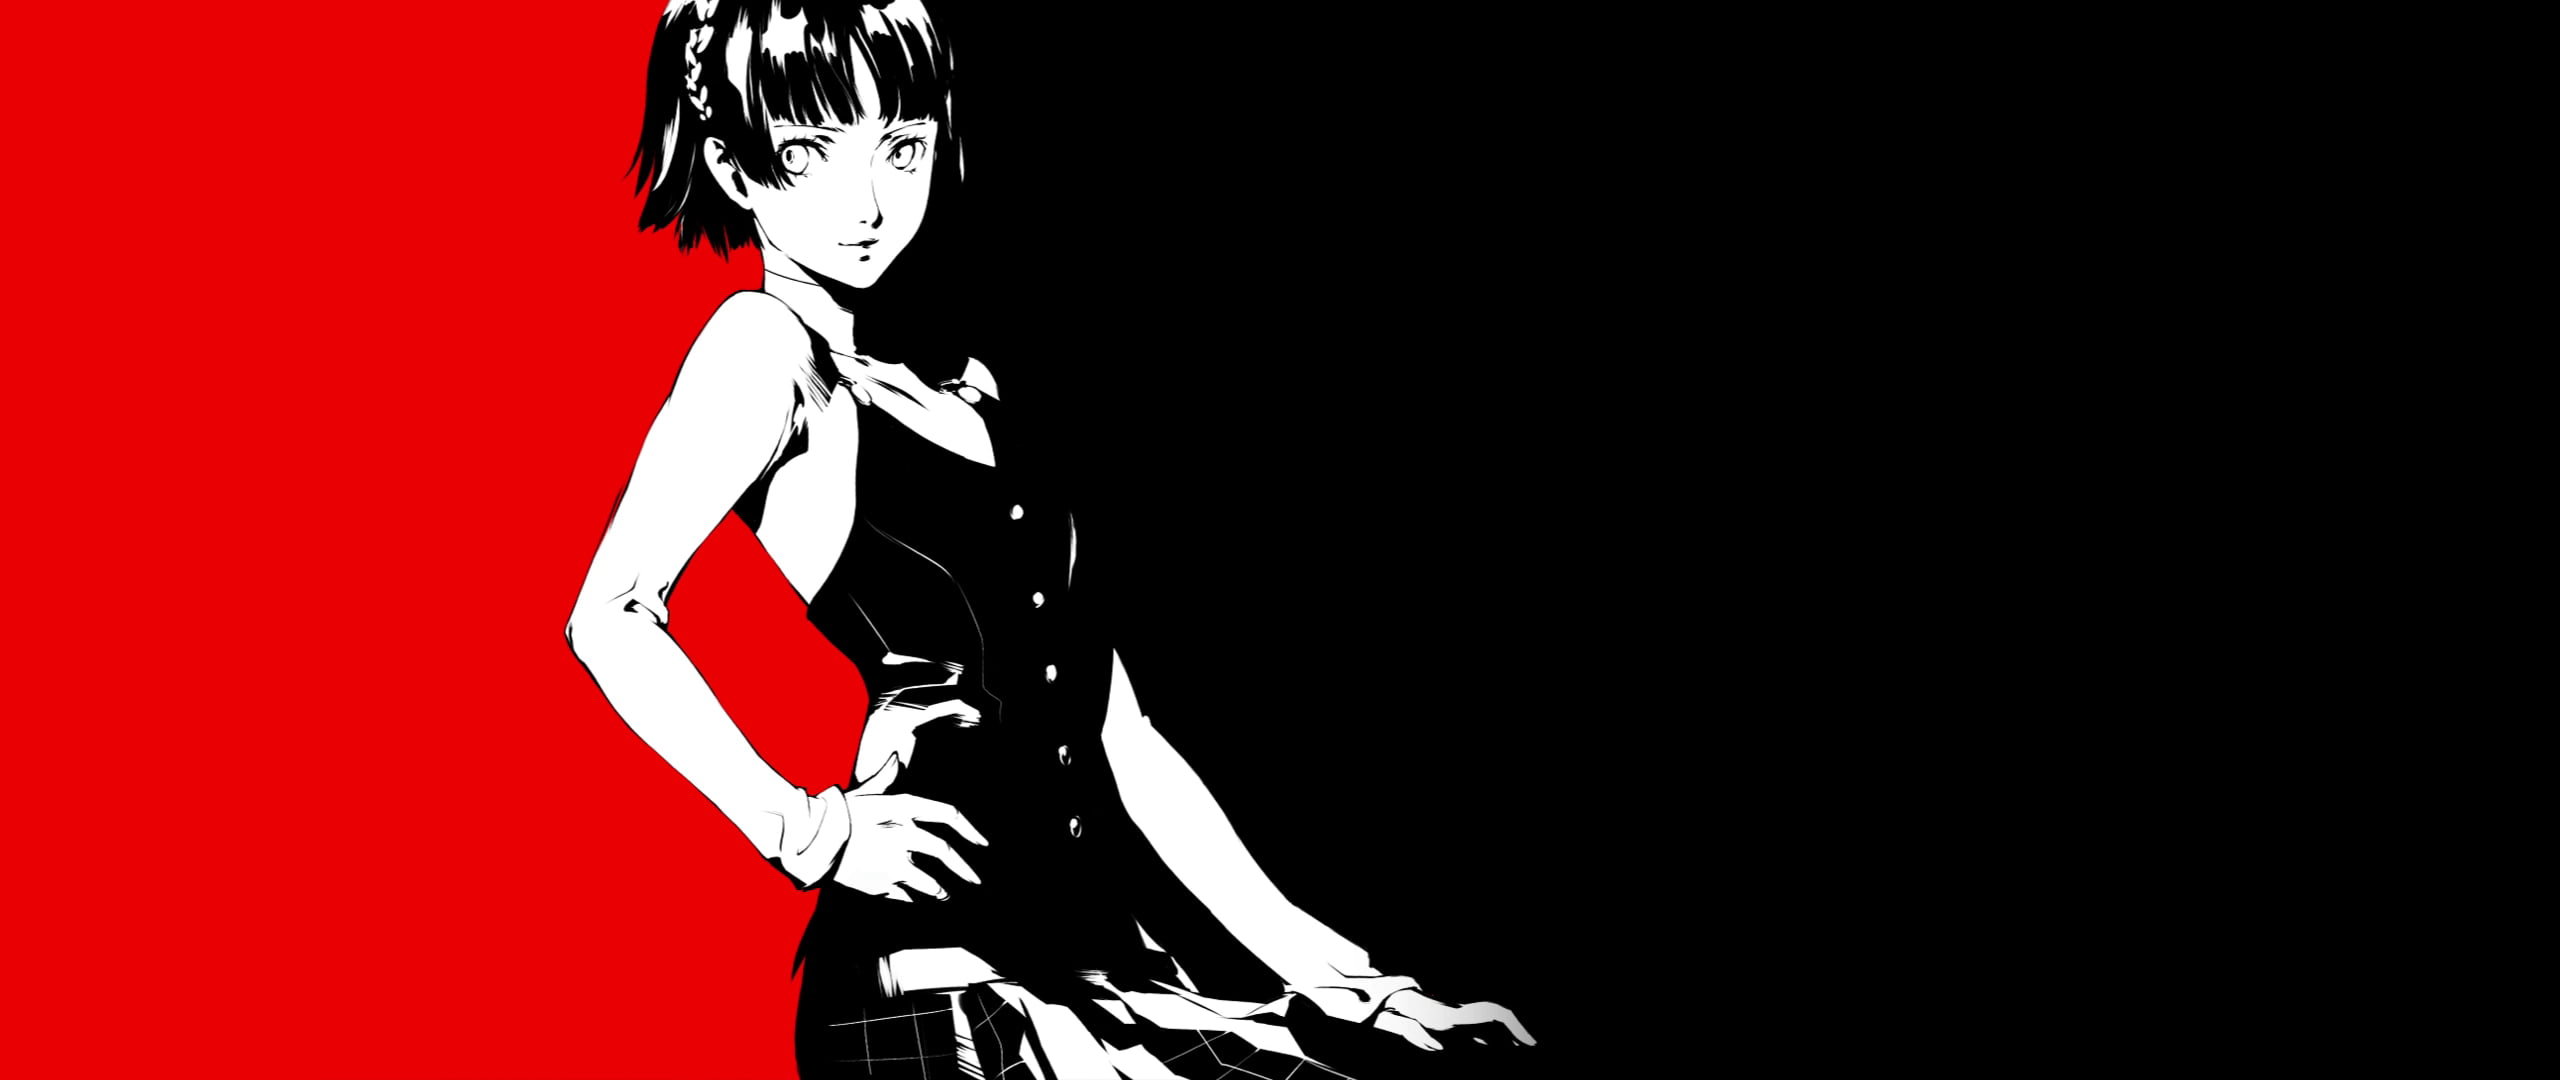 Free download | HD wallpaper: Persona series, Persona 5, Shin Megami ...